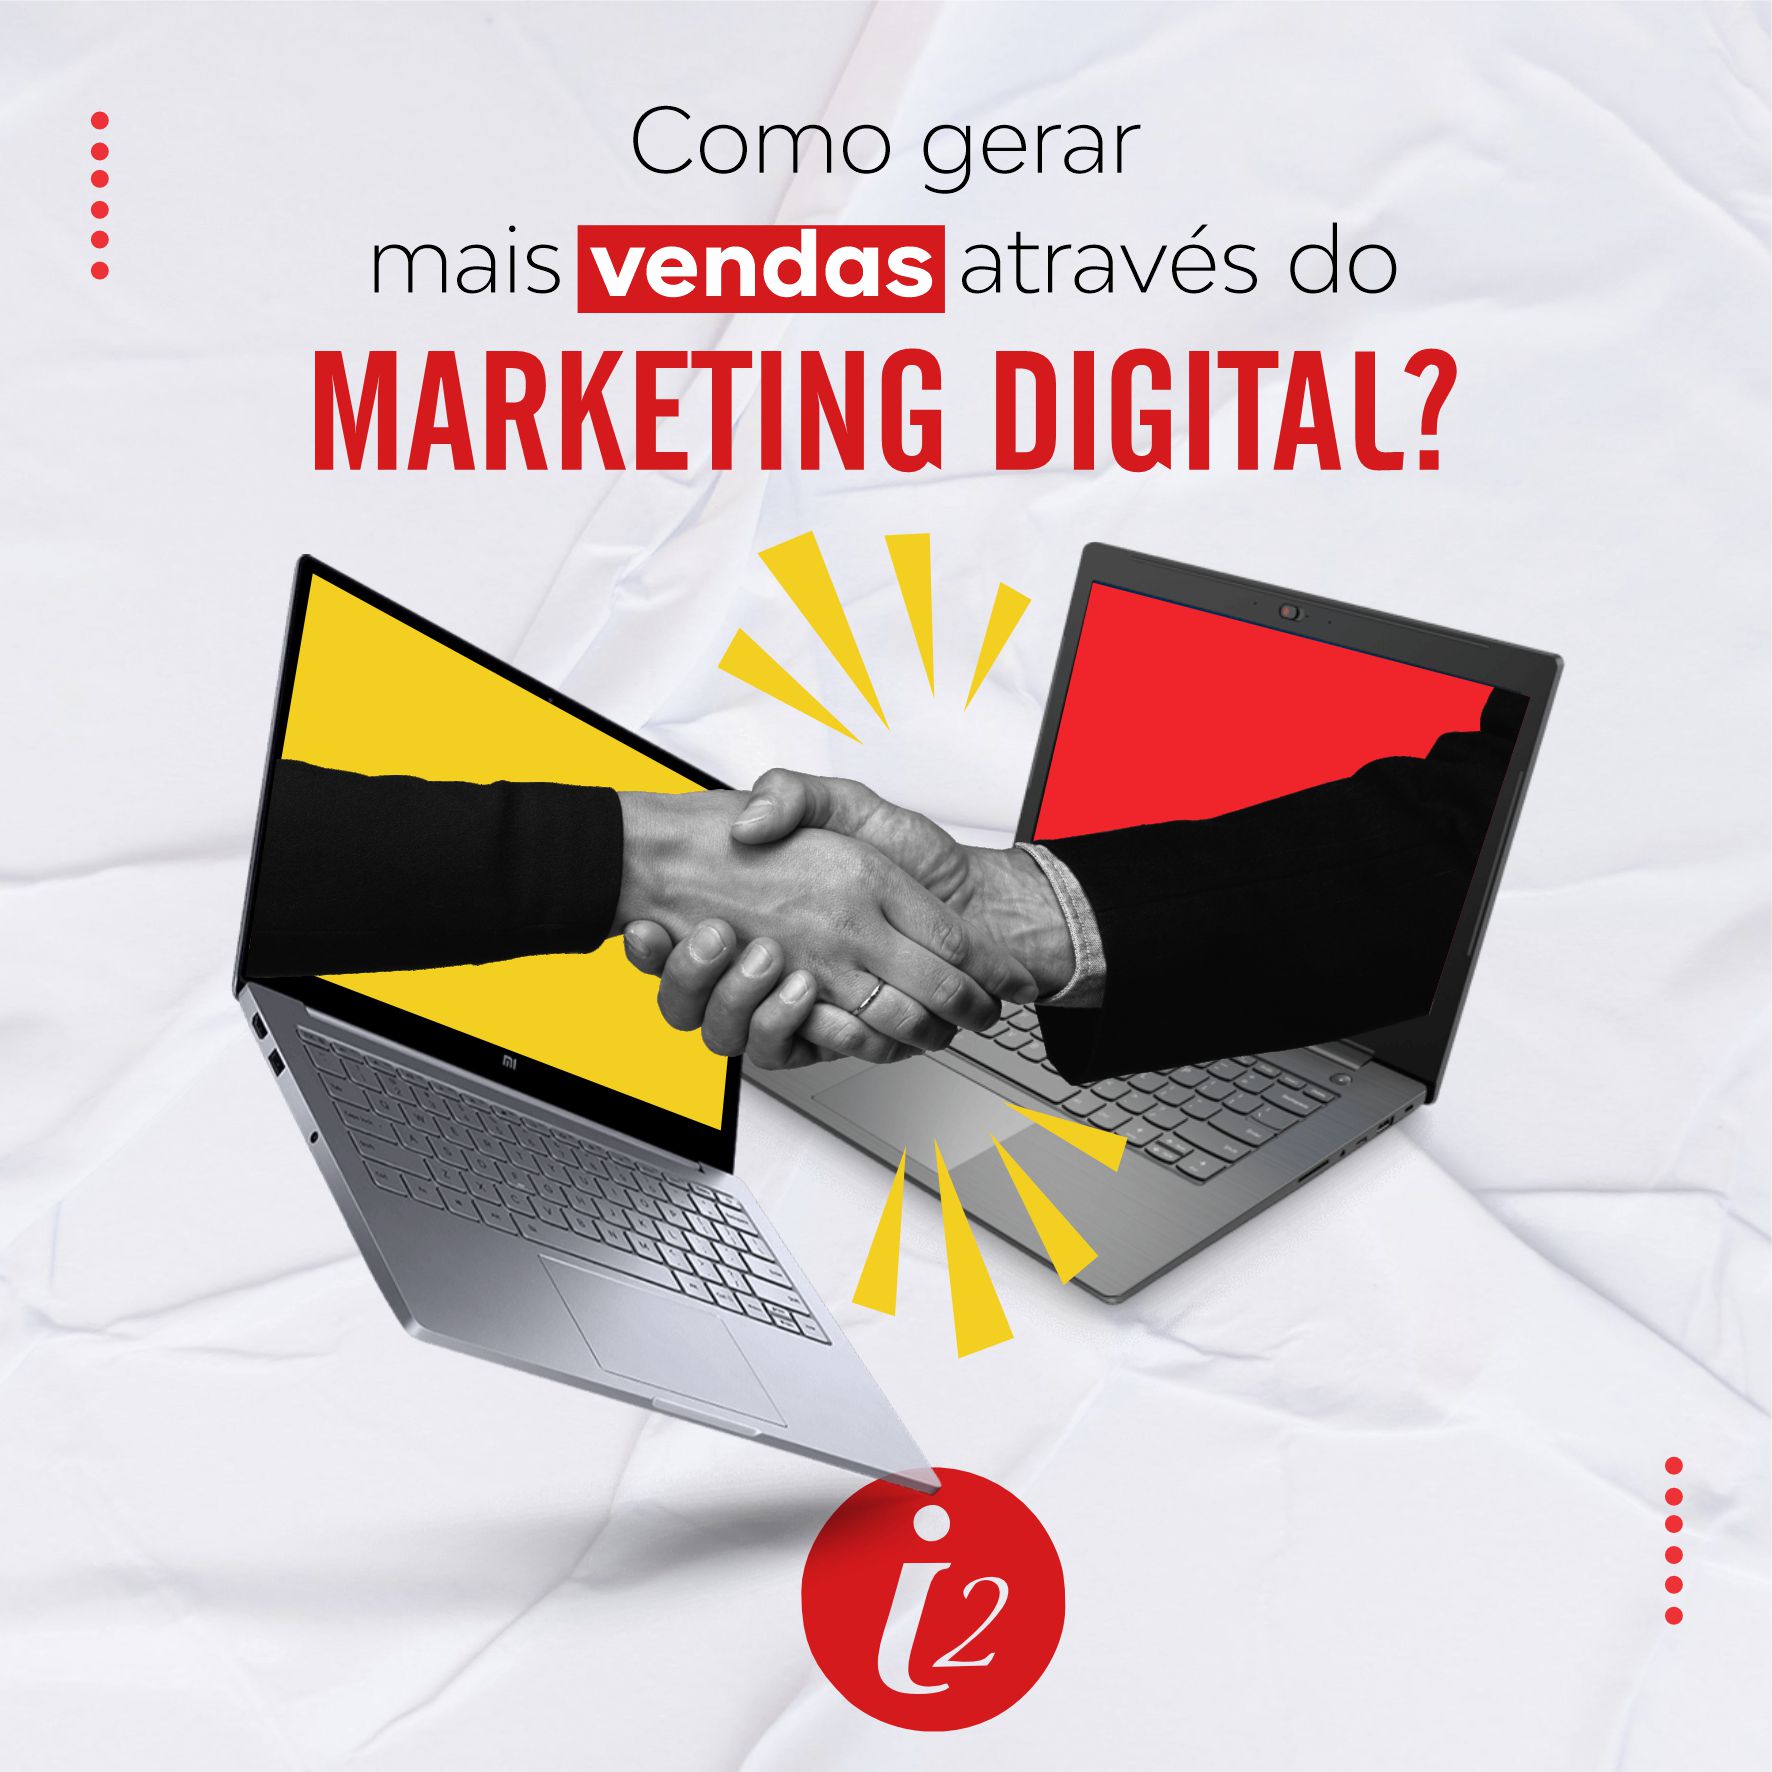 como gerar mais vendas através do marketing digital?